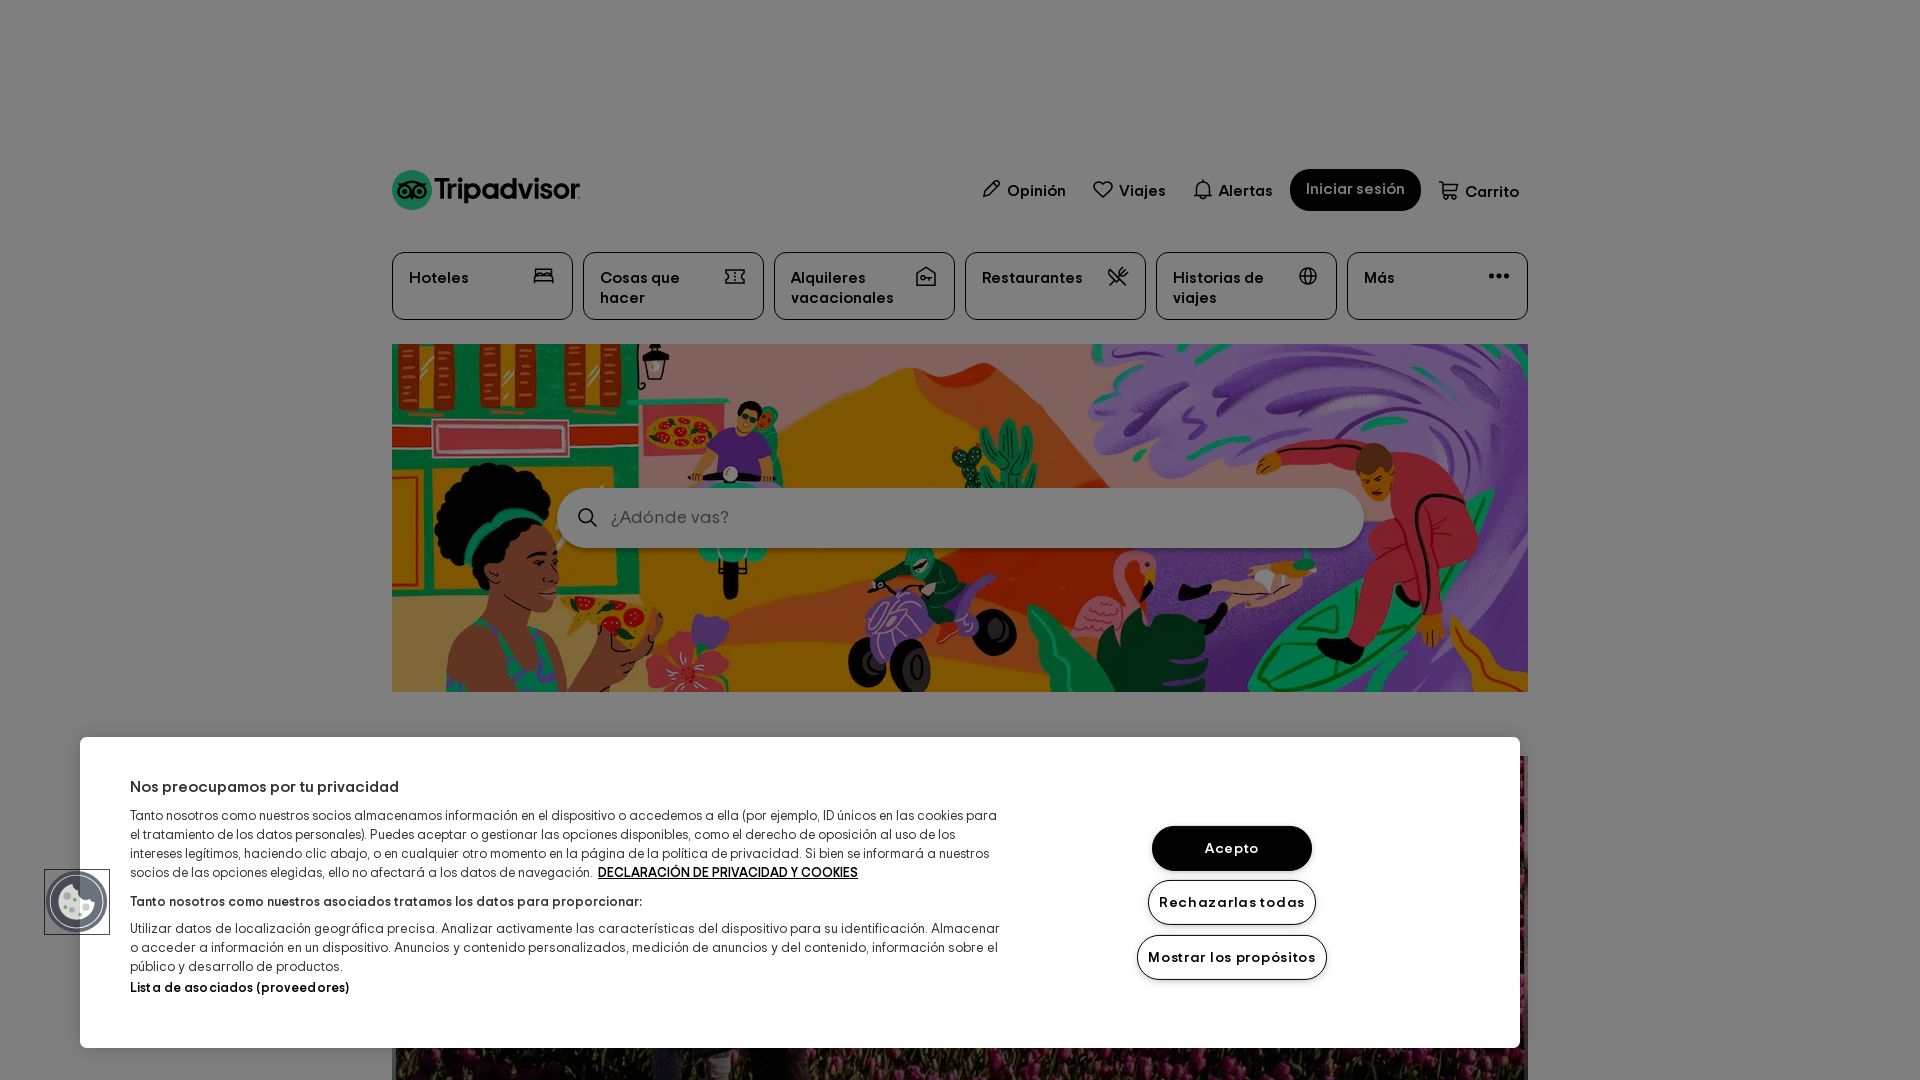 вебсайт tripadvisor.es Є   ONLINE